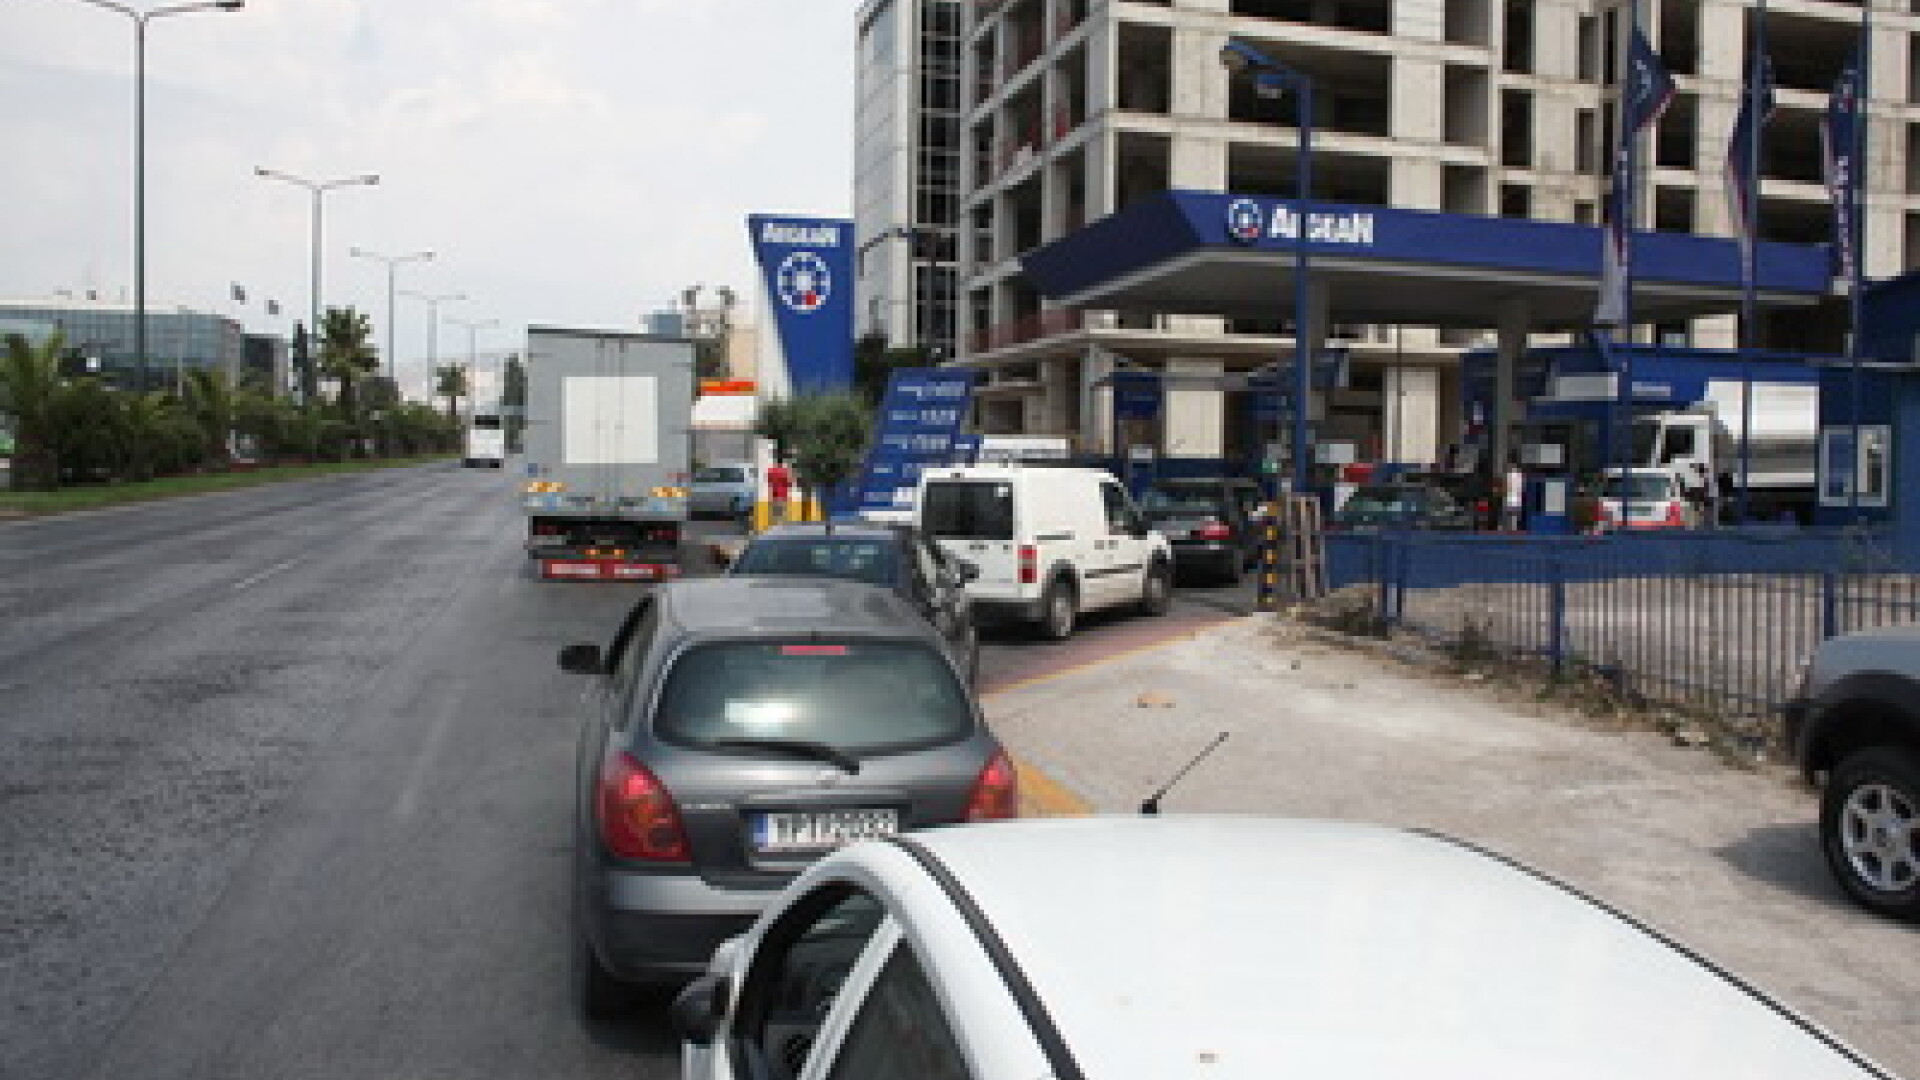 Statie de benzina in Grecia